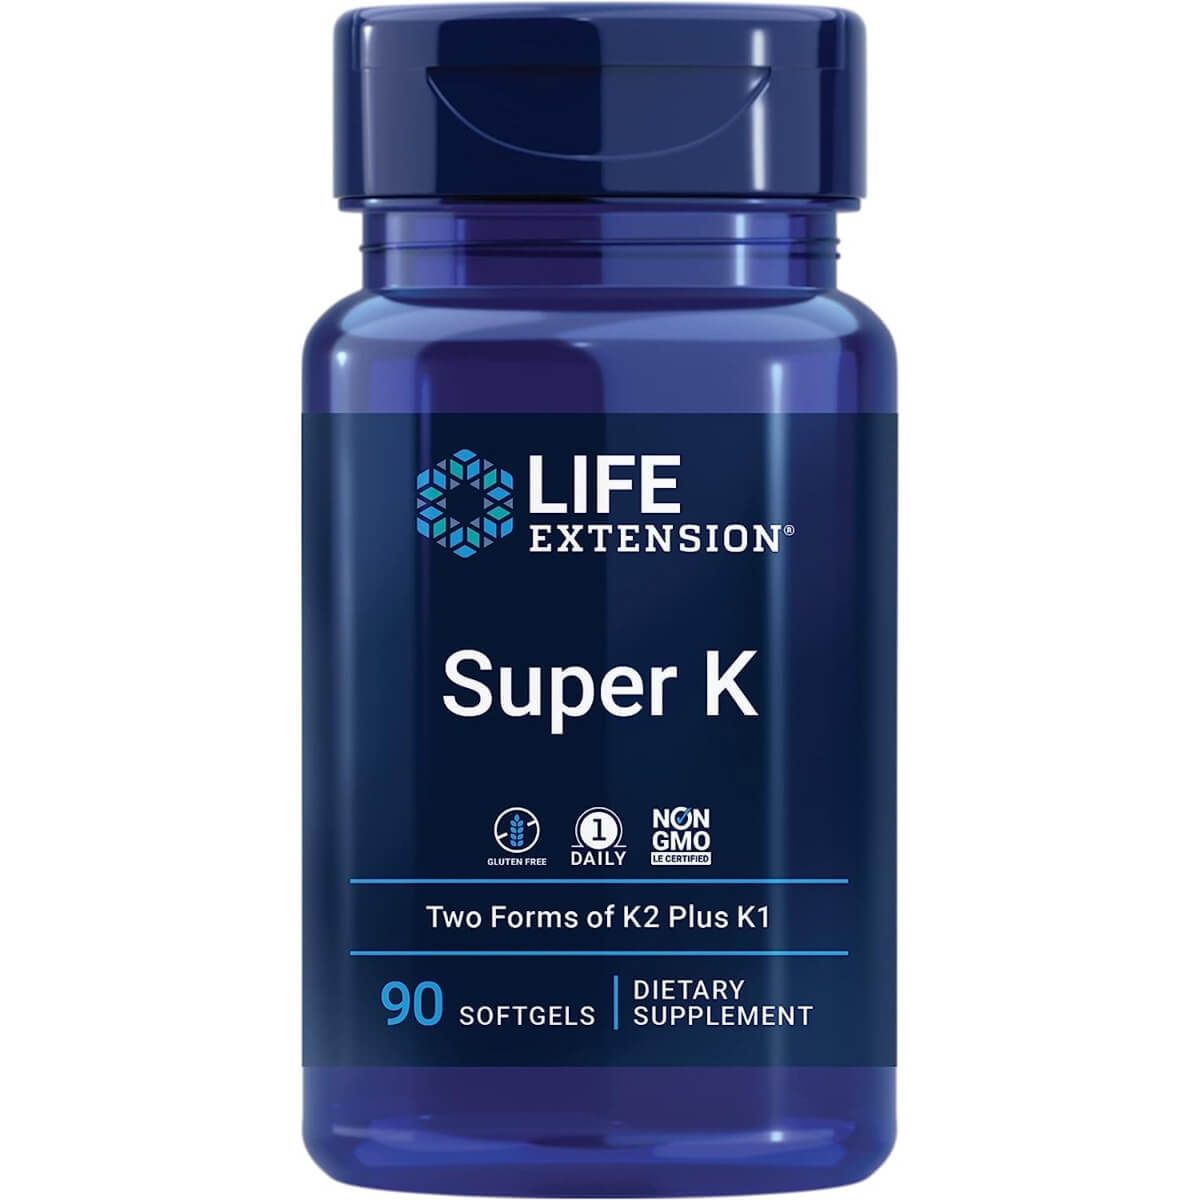 Photos - Vitamins & Minerals Life Extension Super K 90 Softgels PBW-P35835 